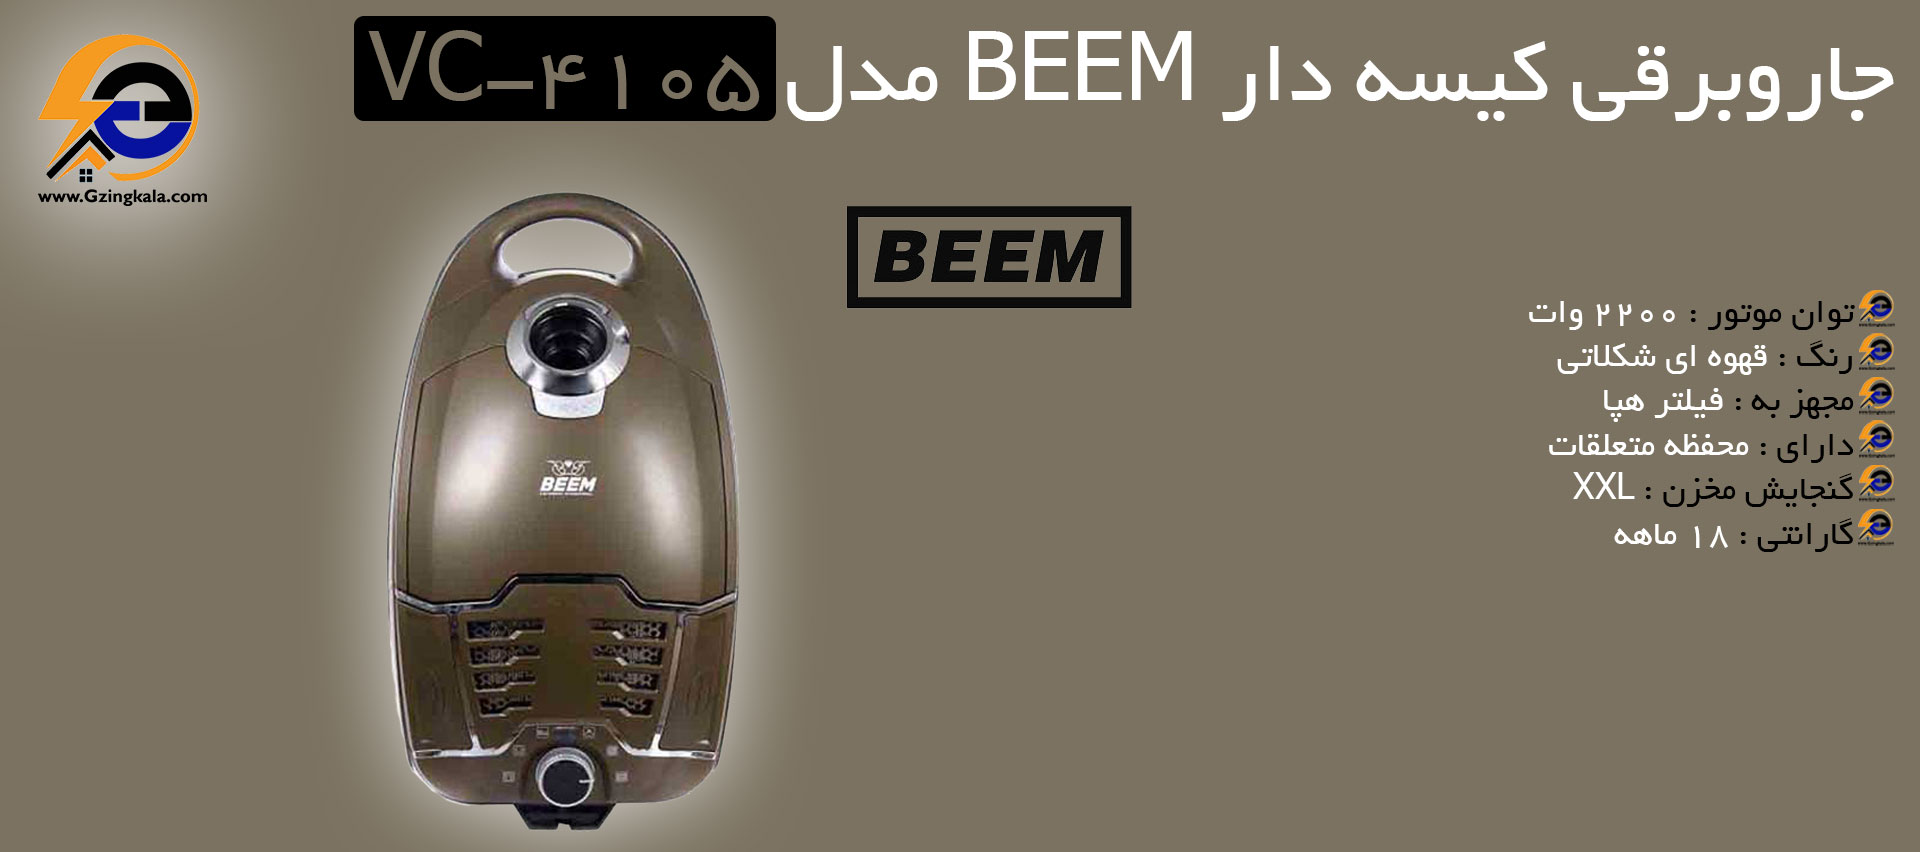 جاروبرقی کیسه دار BEEM مدل VC-4105